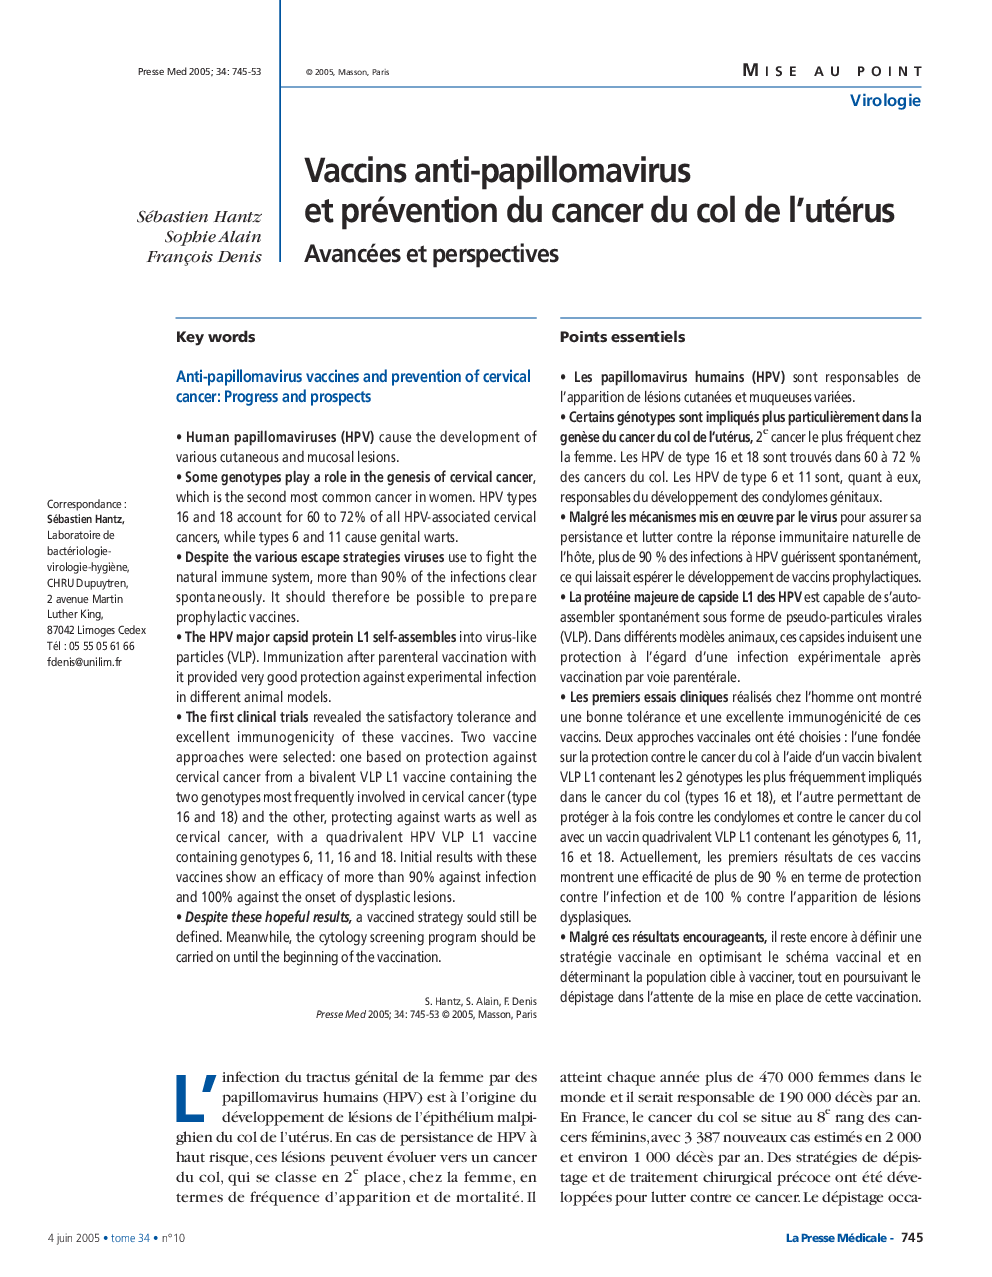 Vaccins anti-papillomavirus et prévention du cancer du col de l'utérus